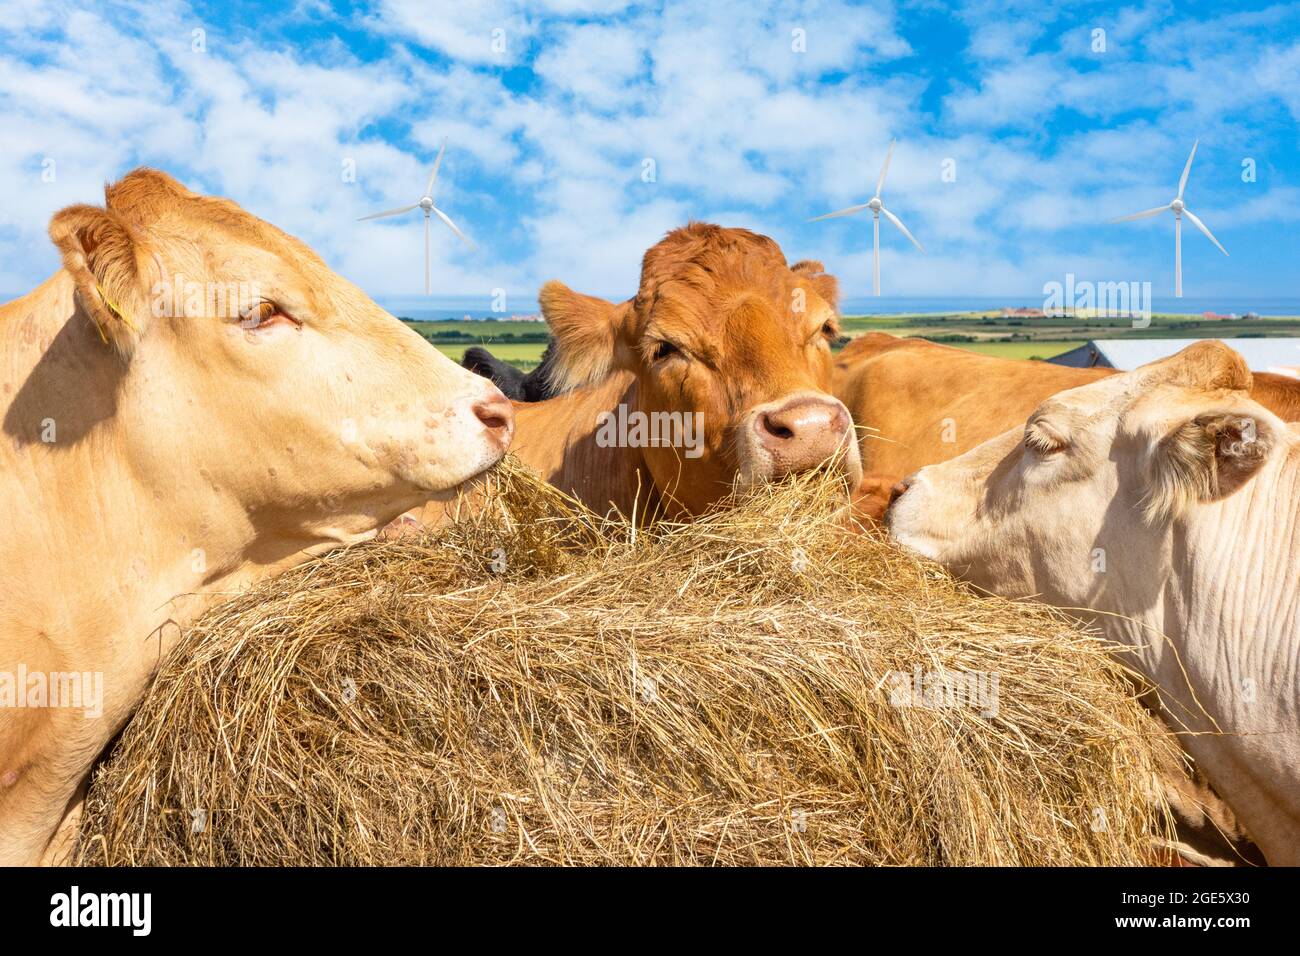 Kühe, Rinder füttern Heu mit Offshore-Windturbinen im Hintergrund. Globale Erwärmung, Klimawandel, Methangas, Landwirtschaft, saubere Energie...Konzept. Stockfoto